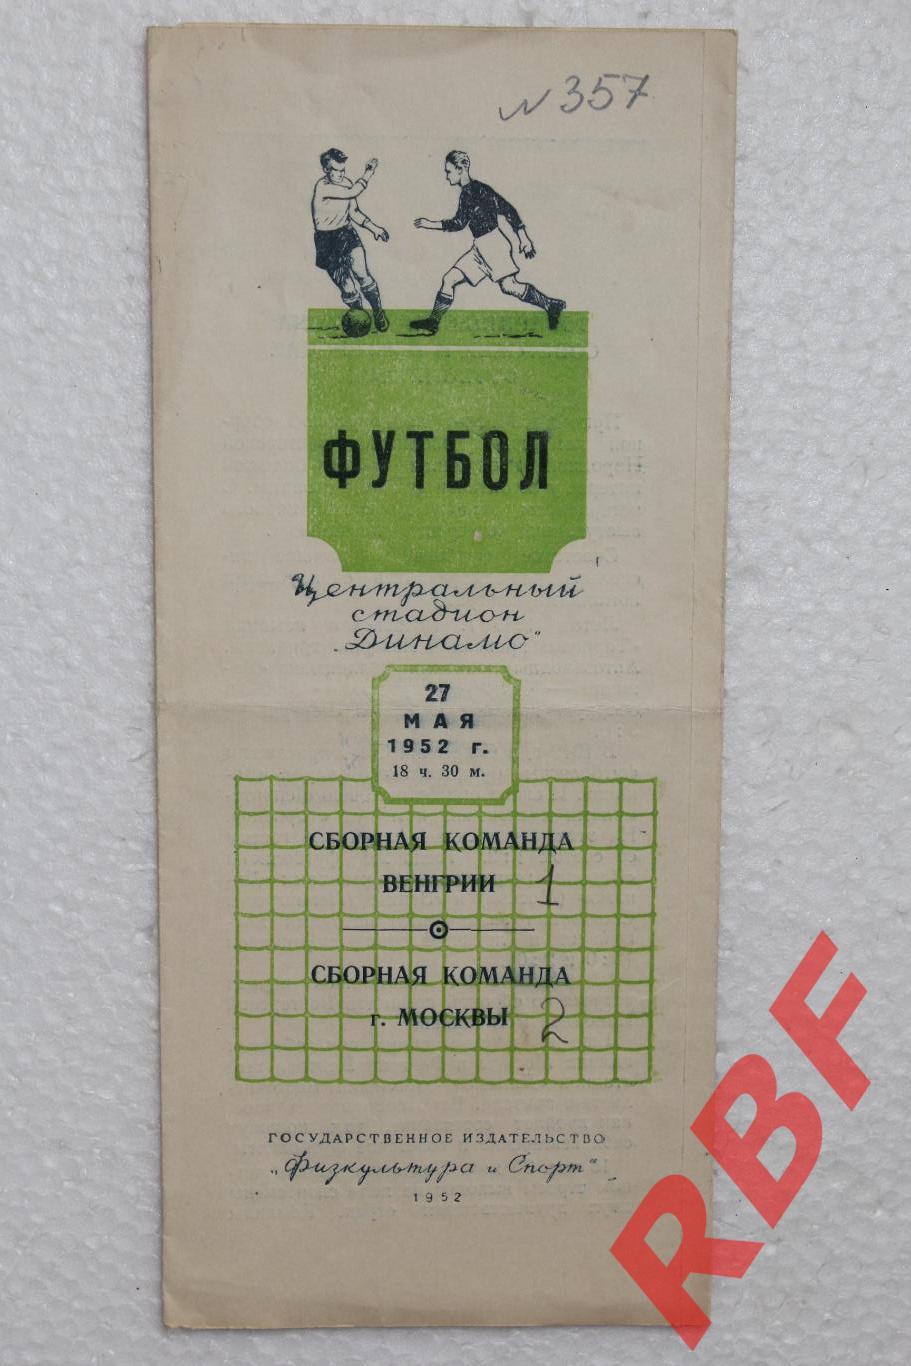 Сборная команды г.Москвы - Сборная команда Венгрии,27 мая 1952